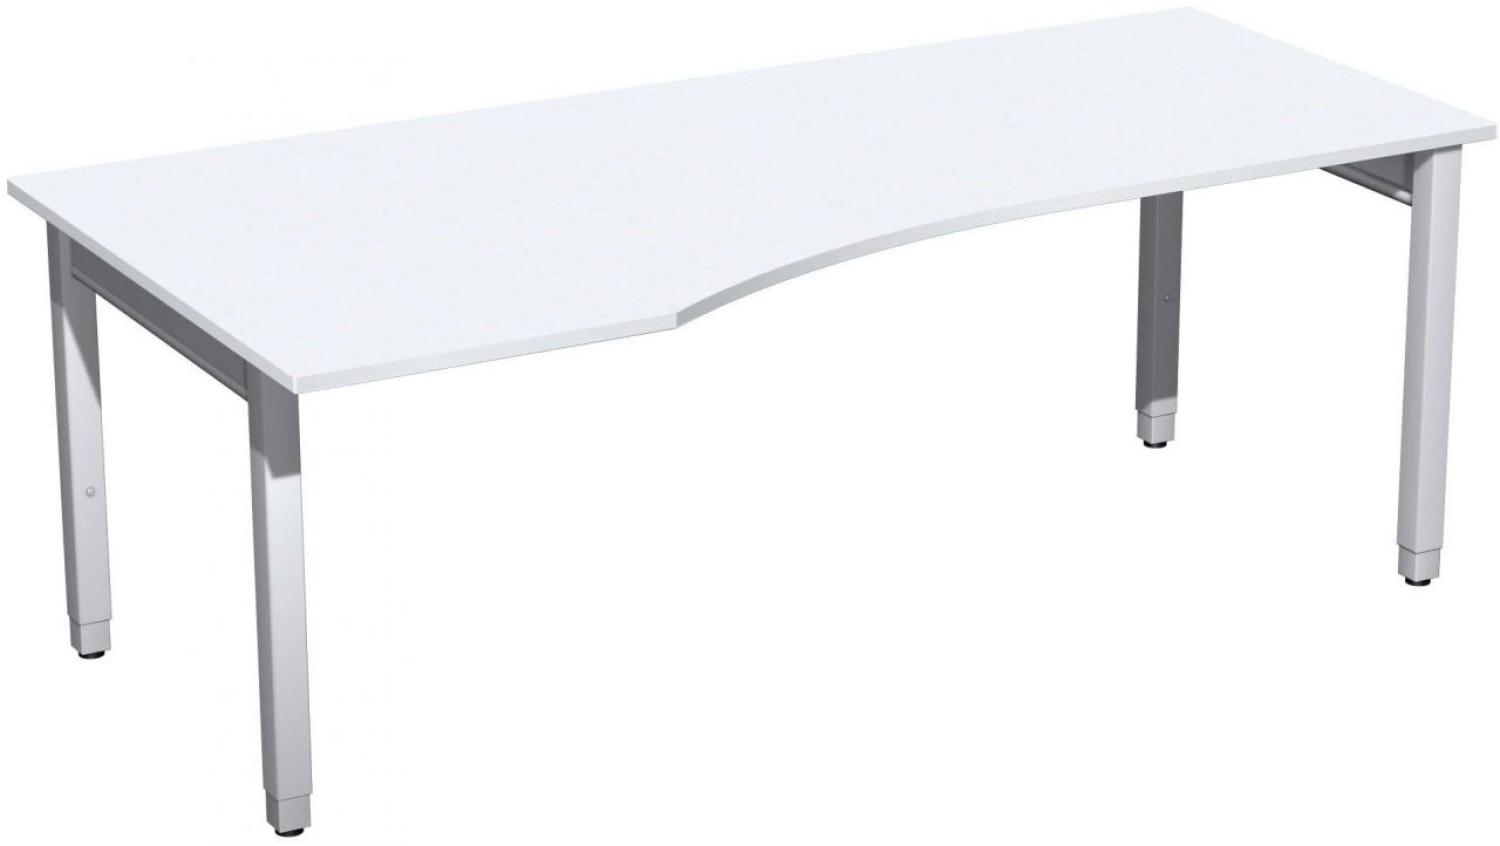 PC-Schreibtisch '4 Fuß Pro Quadrat' links höhenverstellbar, 200x100x68-86cm, Weiß / Silber Bild 1